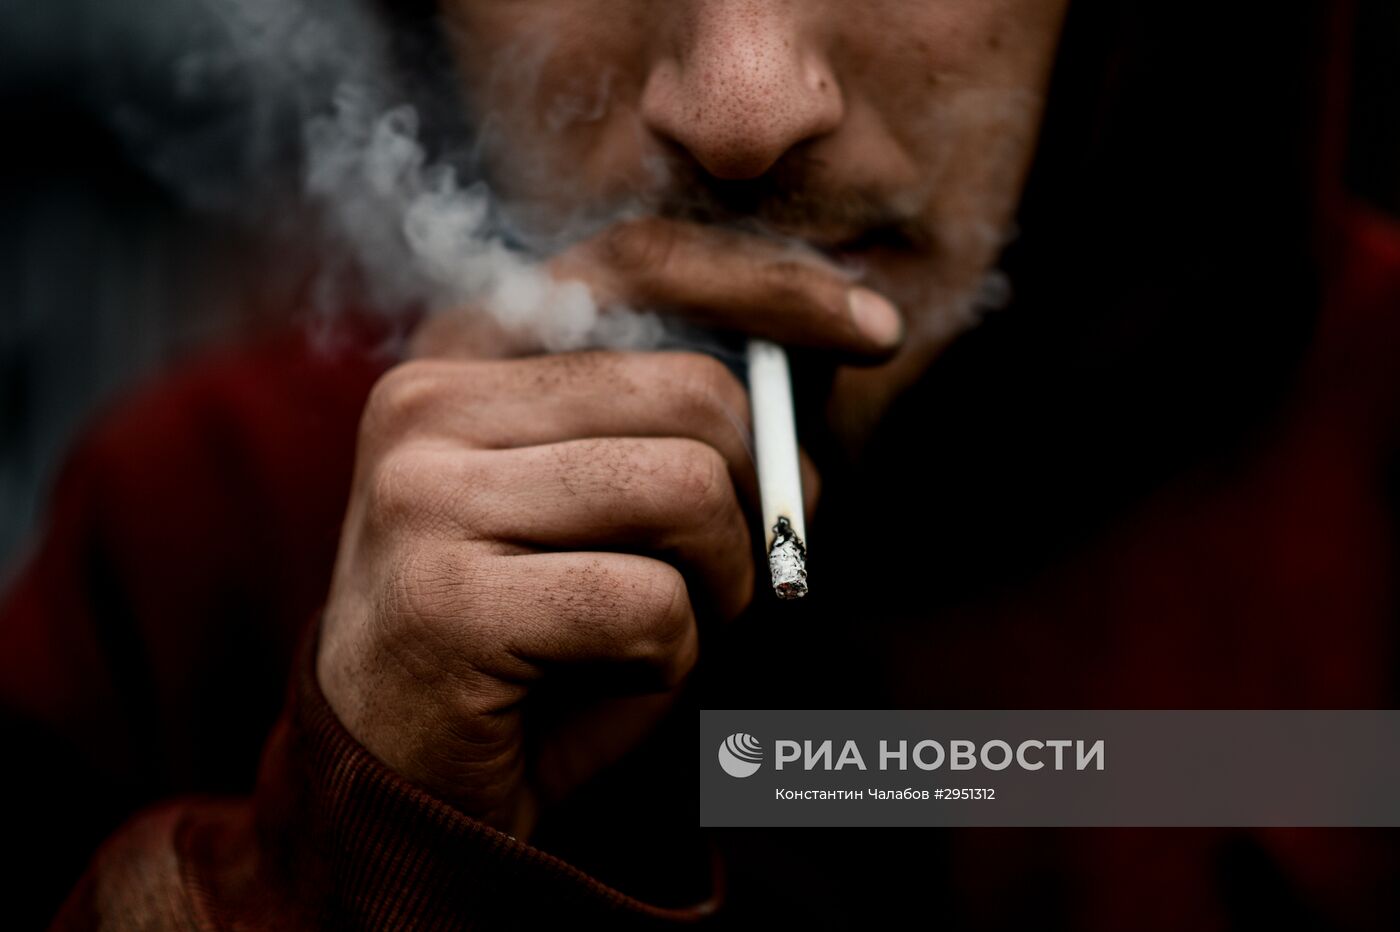 Курение сигарет